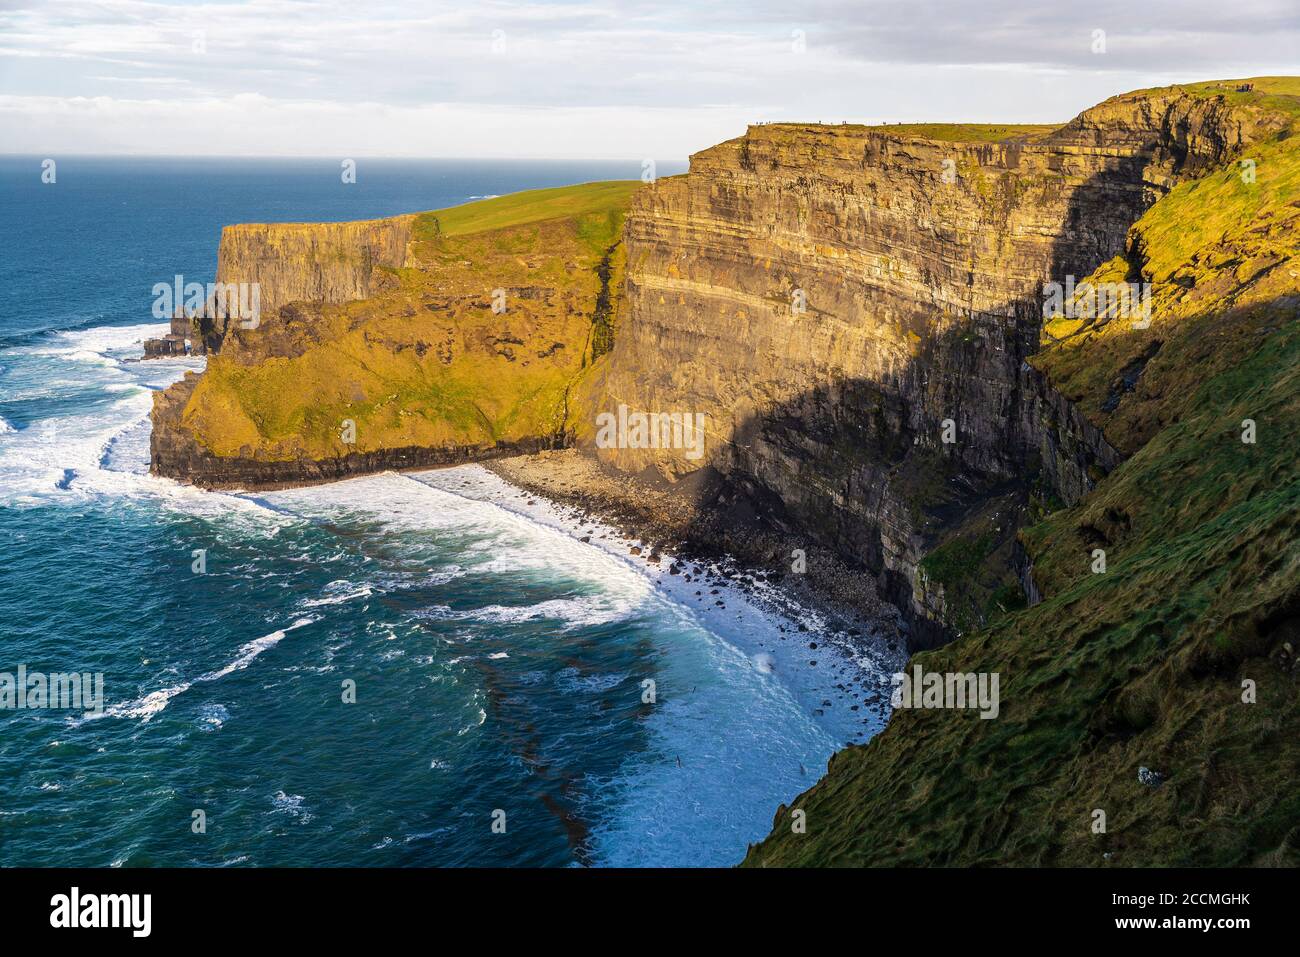 Falaises de Moher, falaises marines situées à la limite sud-ouest de la région de Burren dans le comté de Clare, en Irlande Banque D'Images